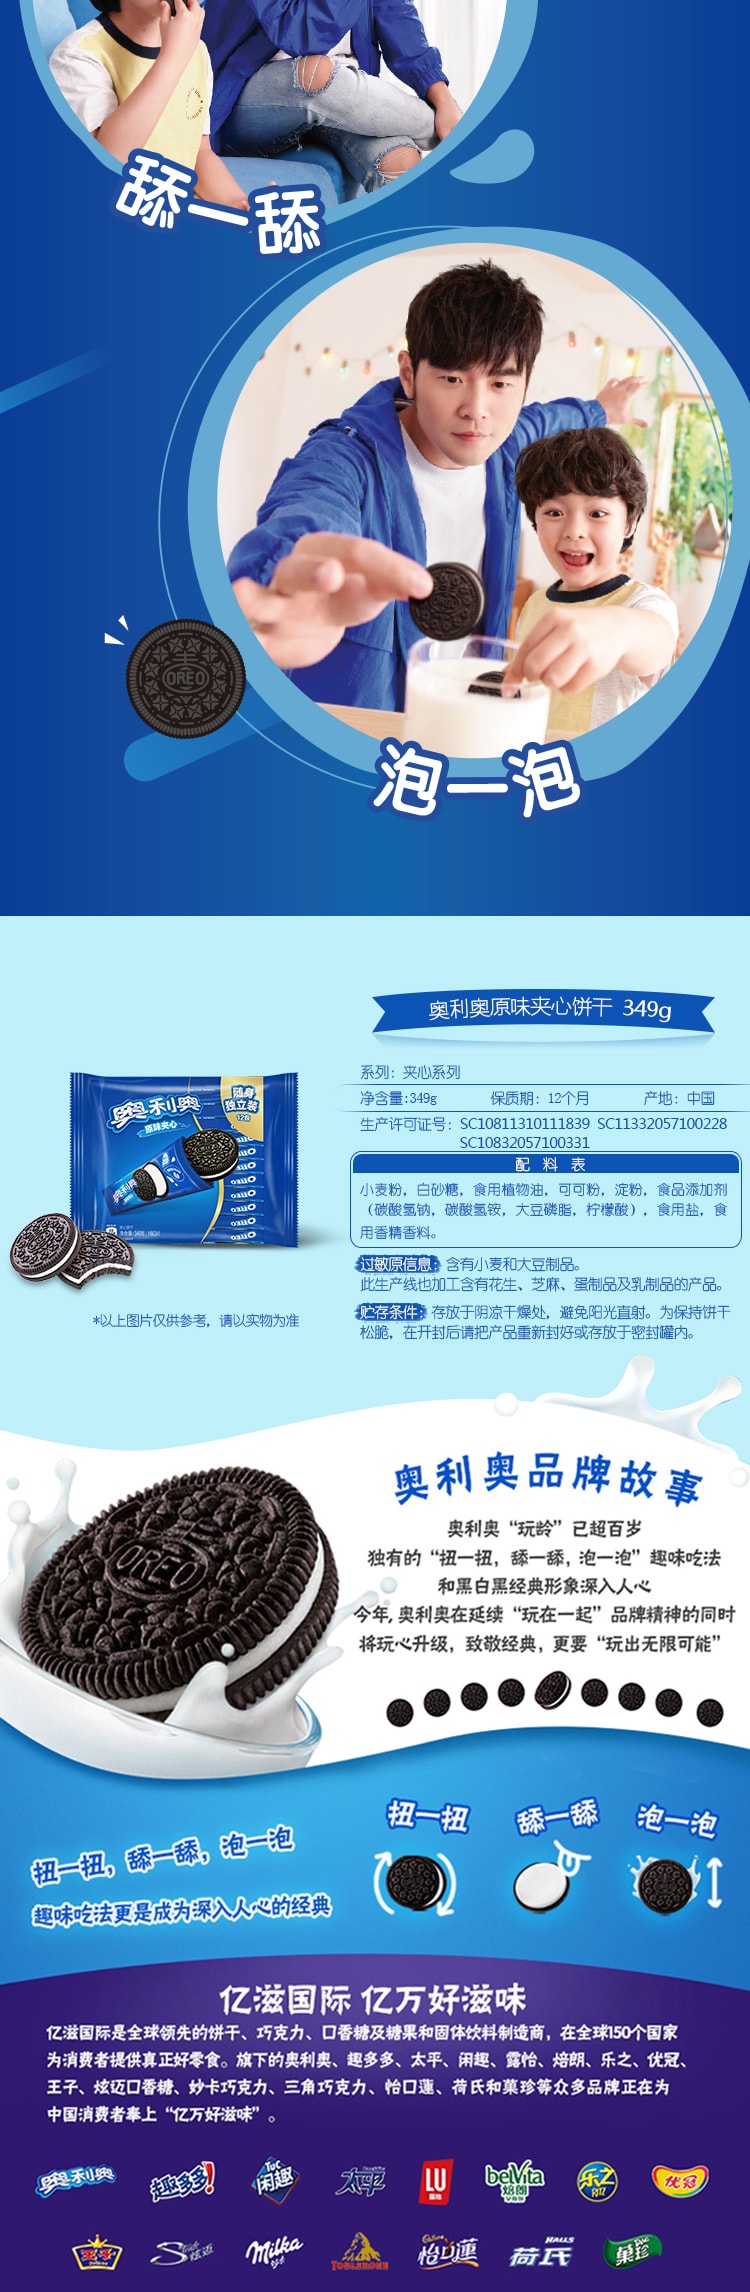 換包裝[中國直郵] 奧利奧 OREO 原味巧克力夾心餅乾349g 隨身獨立裝12小包 每小包/3片 網紅辦公室零食夾心餅乾 1包裝